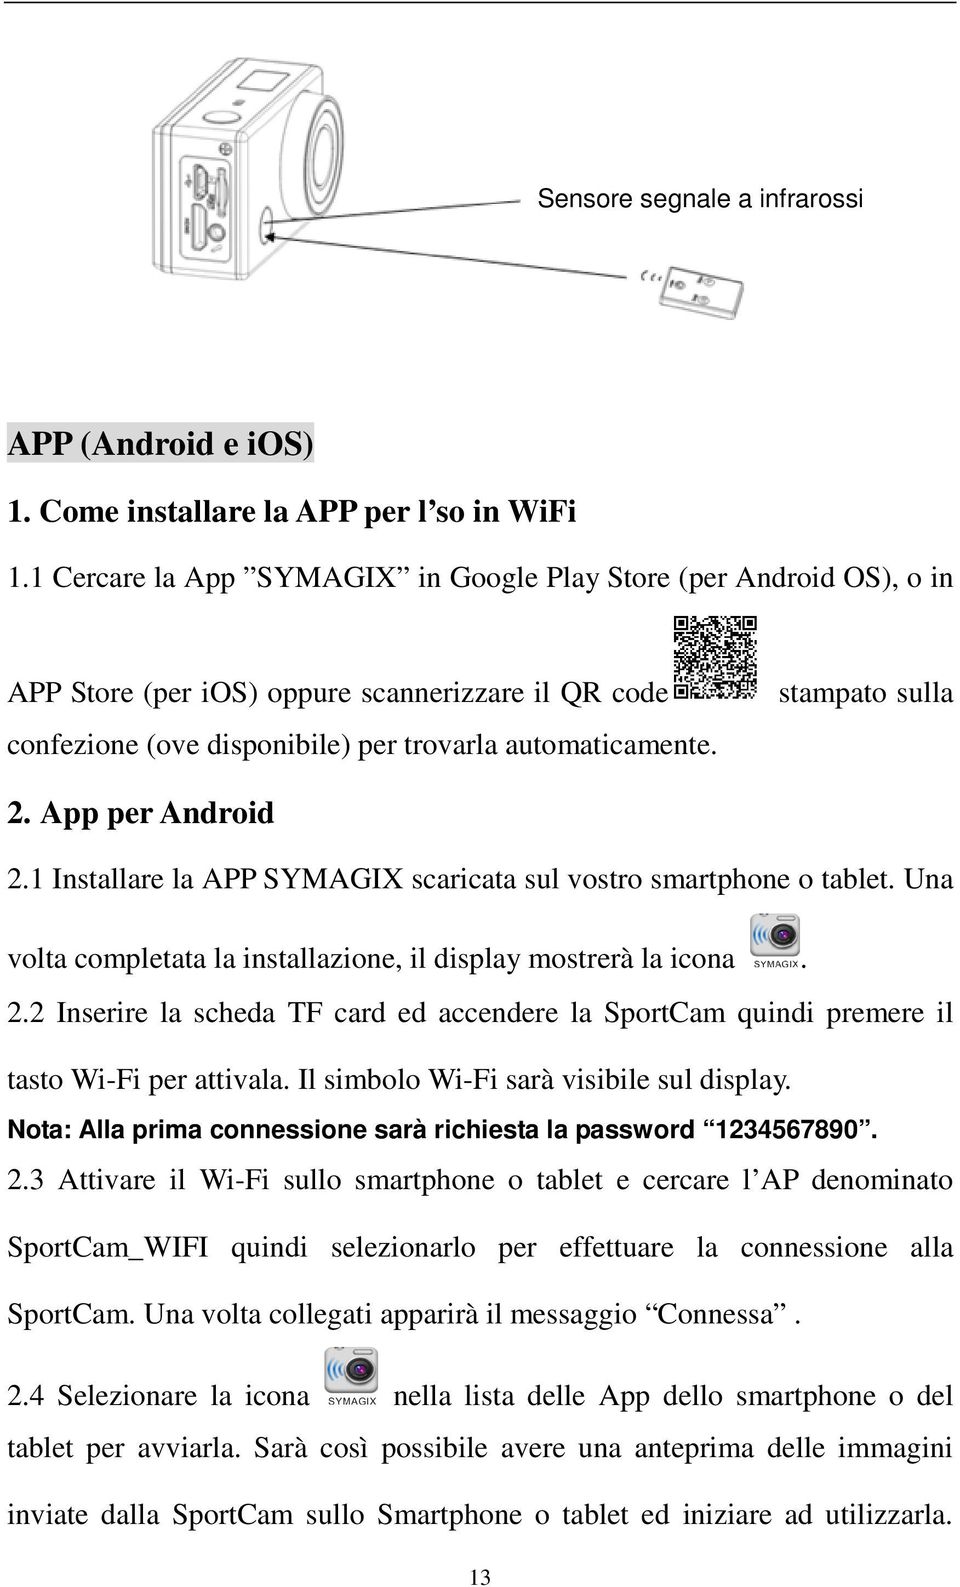 App per Android 2.1 Installare la APP SYMAGIX scaricata sul vostro smartphone o tablet. Una volta completata la installazione, il display mostrerà la icona. 2.2 Inserire la scheda TF card ed accendere la SportCam quindi premere il tasto Wi-Fi per attivala.